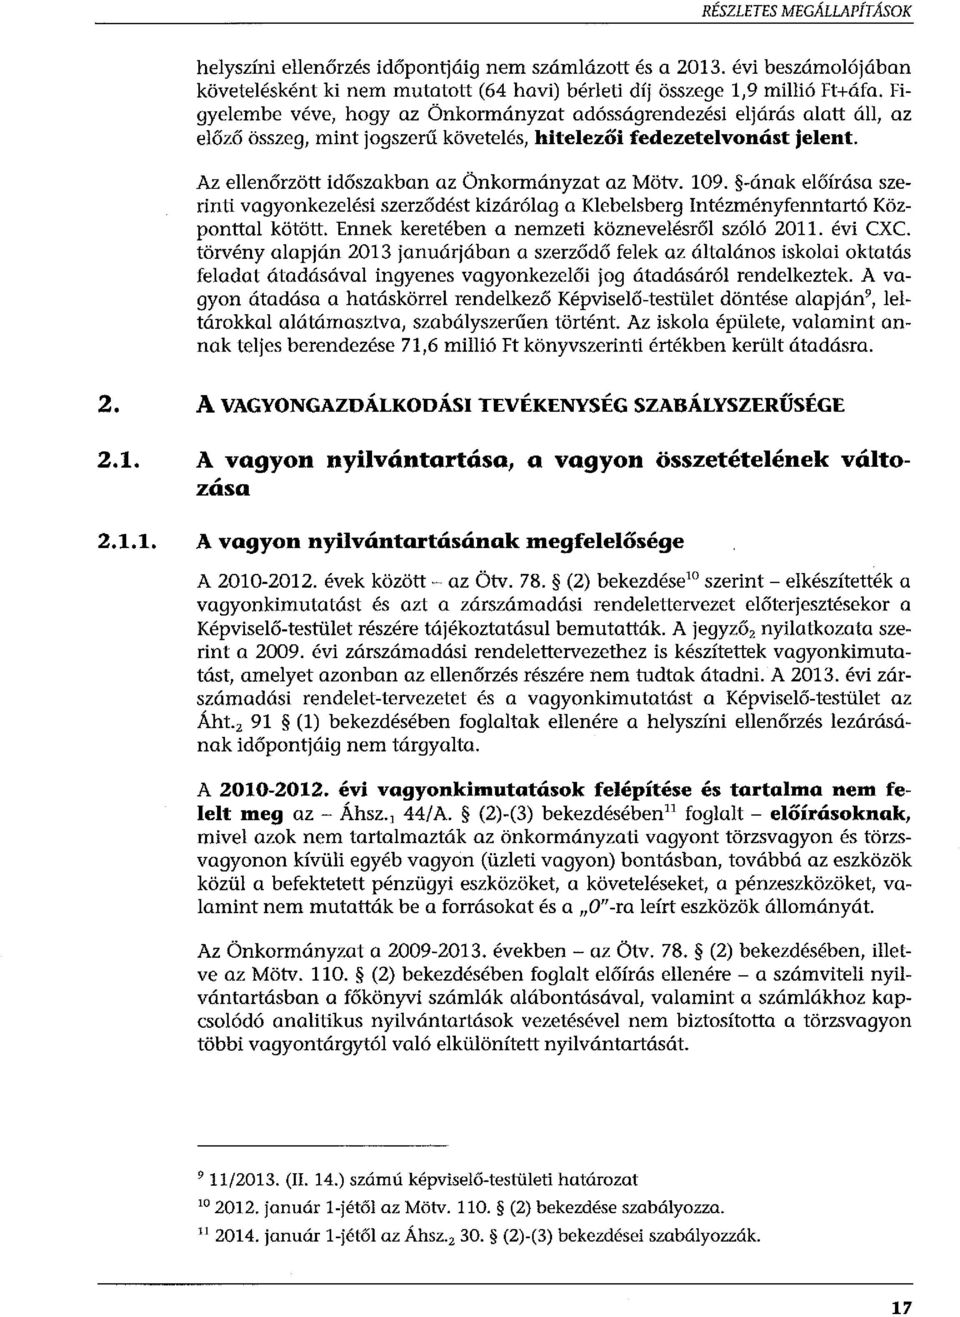 109. -ának előírása szerinti vagyonkezelési szerződést kizárólag a Klebelsberg Intézményfenntartó Központtal kötött. Ennek keretében a nemzeti köznevelésről szóló 2011. évi CXC.